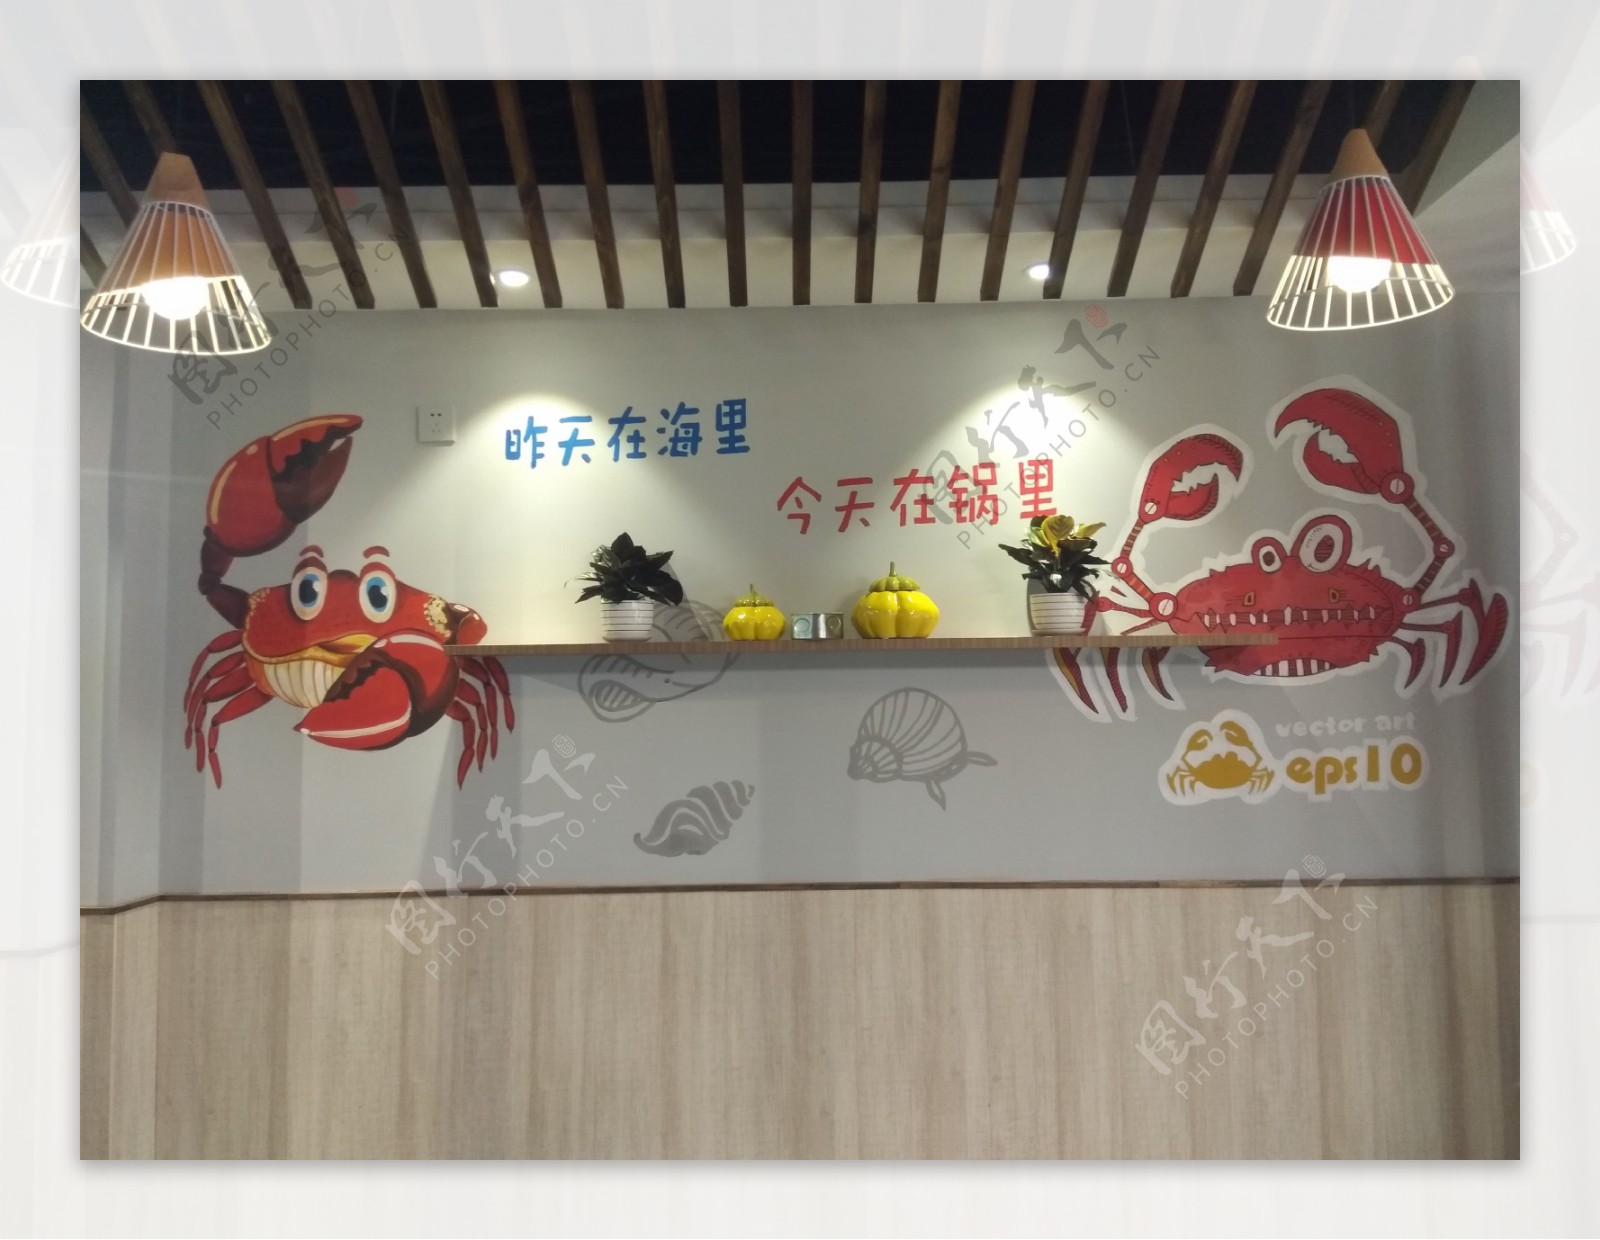 海鲜馆背景墙卡通螃蟹